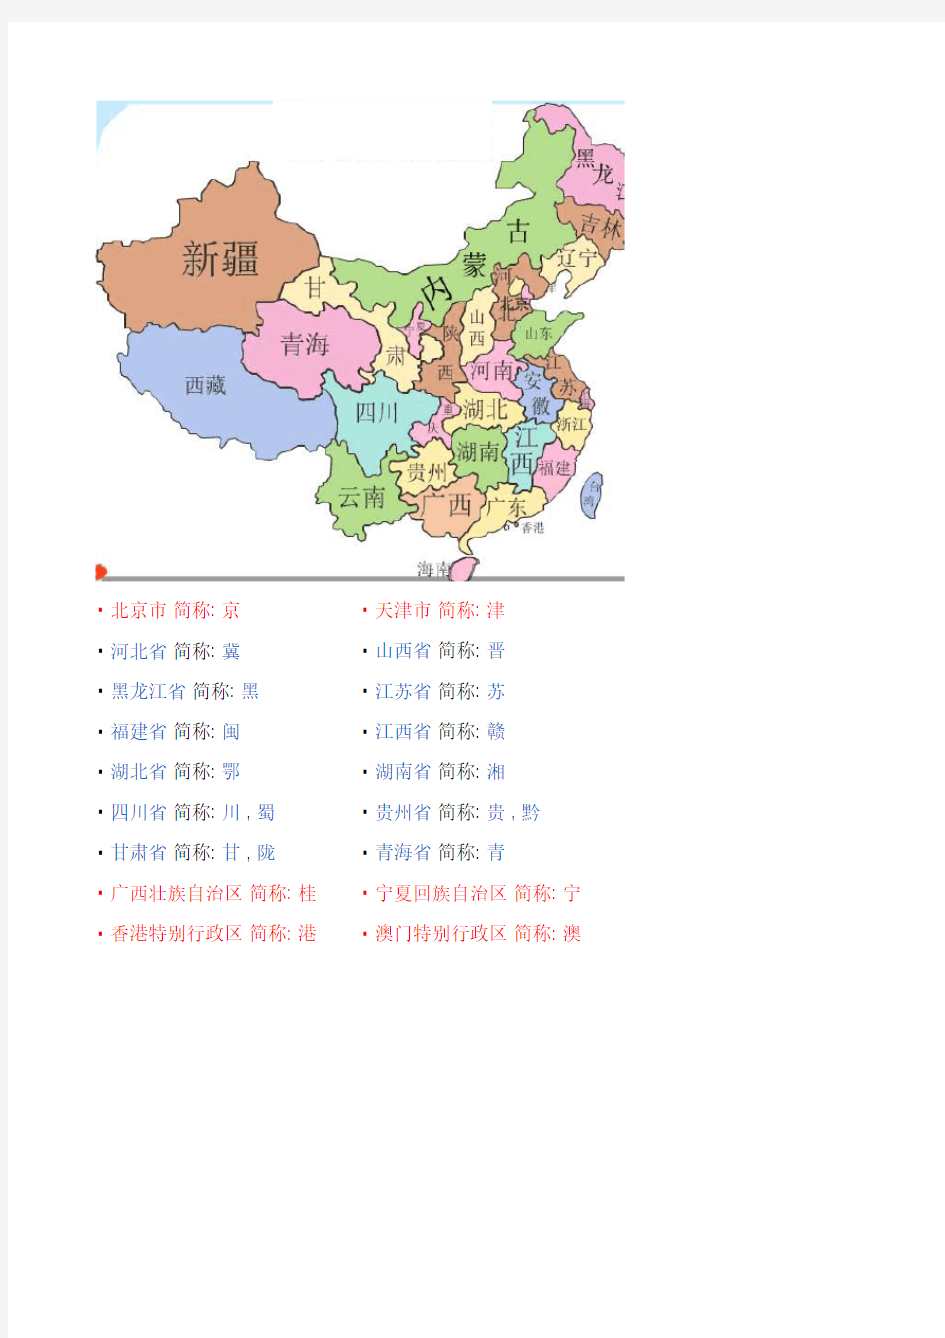 中国省份地图及简称(2015更新)